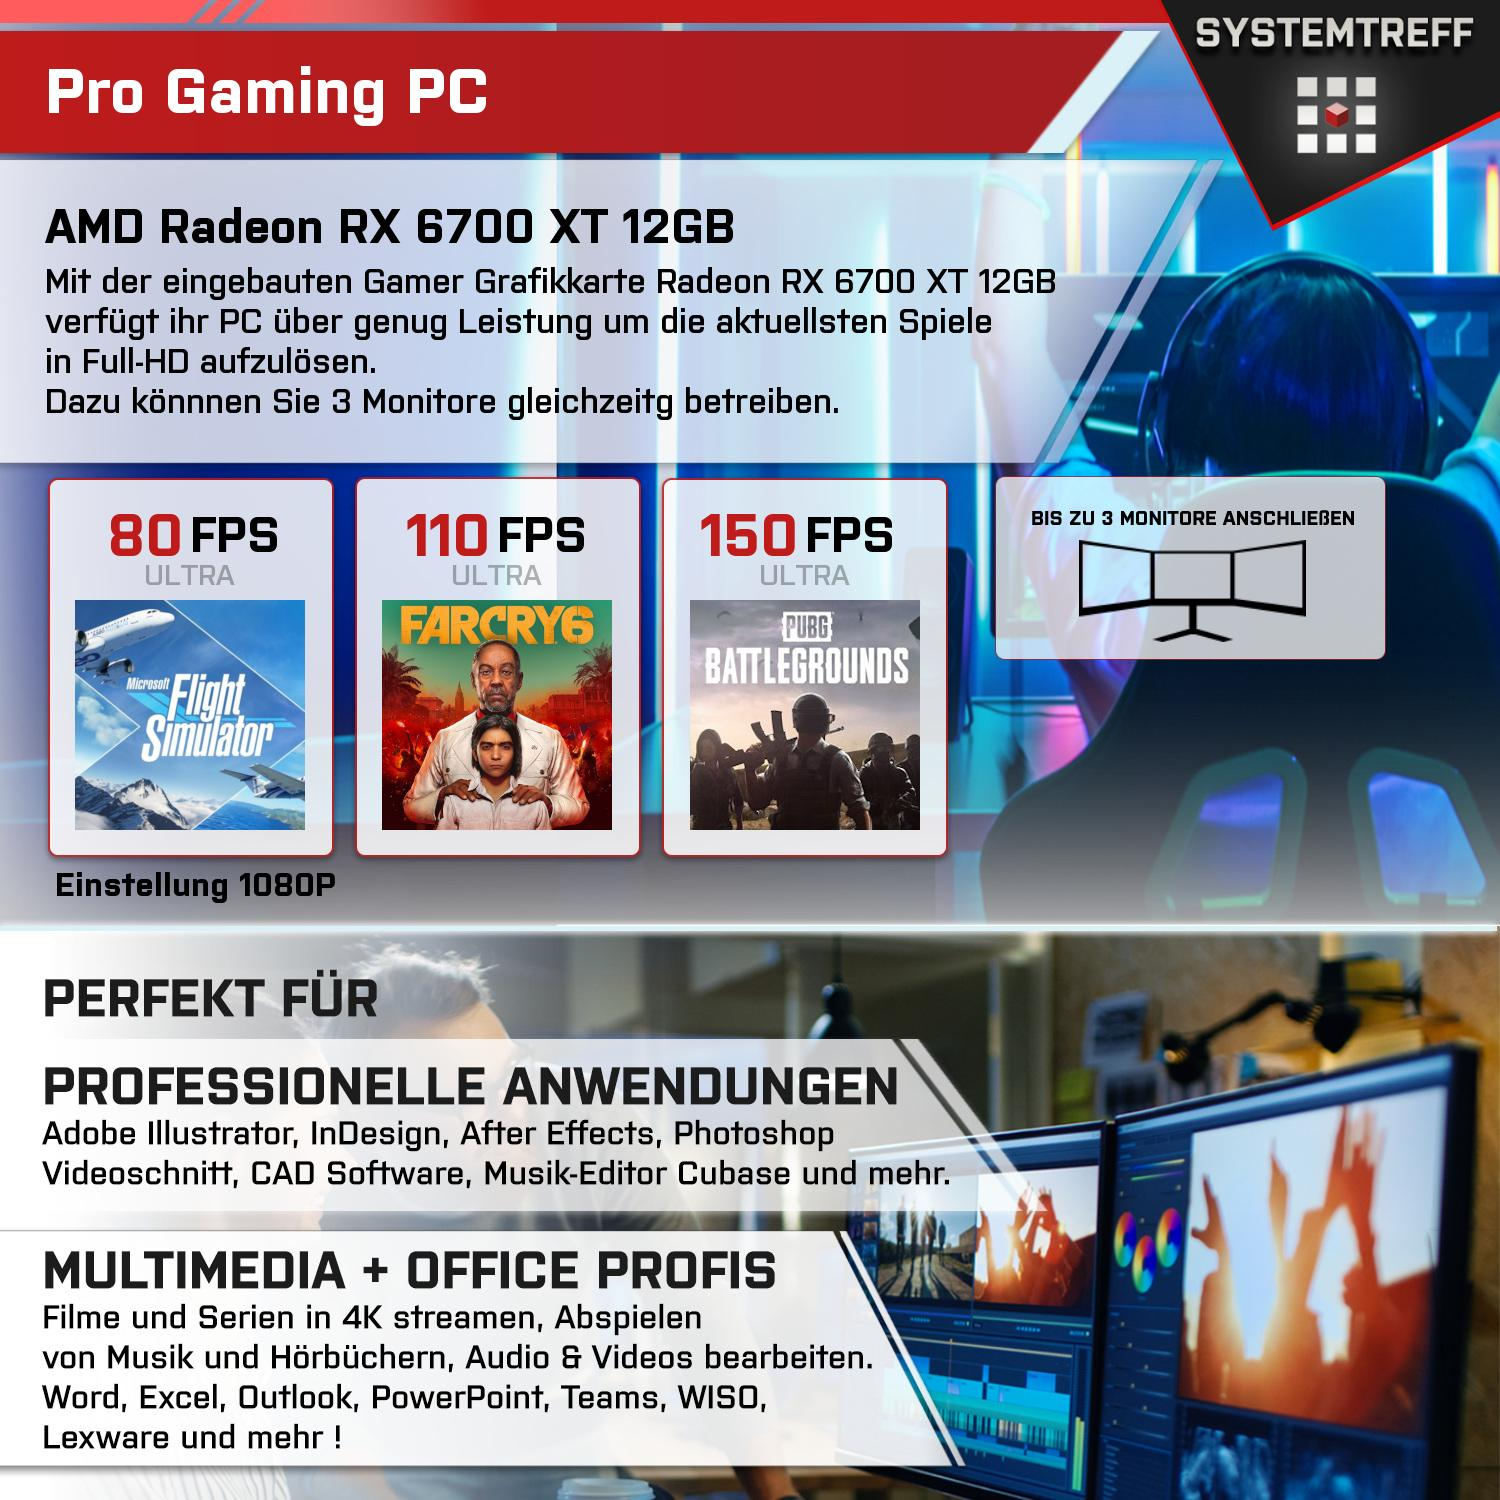 SYSTEMTREFF Gaming Komplett AMD GDDR6, 6700 mit 5900X 12 32 XT mSSD, RX 5900X, Prozessor, GB Ryzen 9 GB PC GB 1000 AMD RAM, Radeon Komplett 12GB